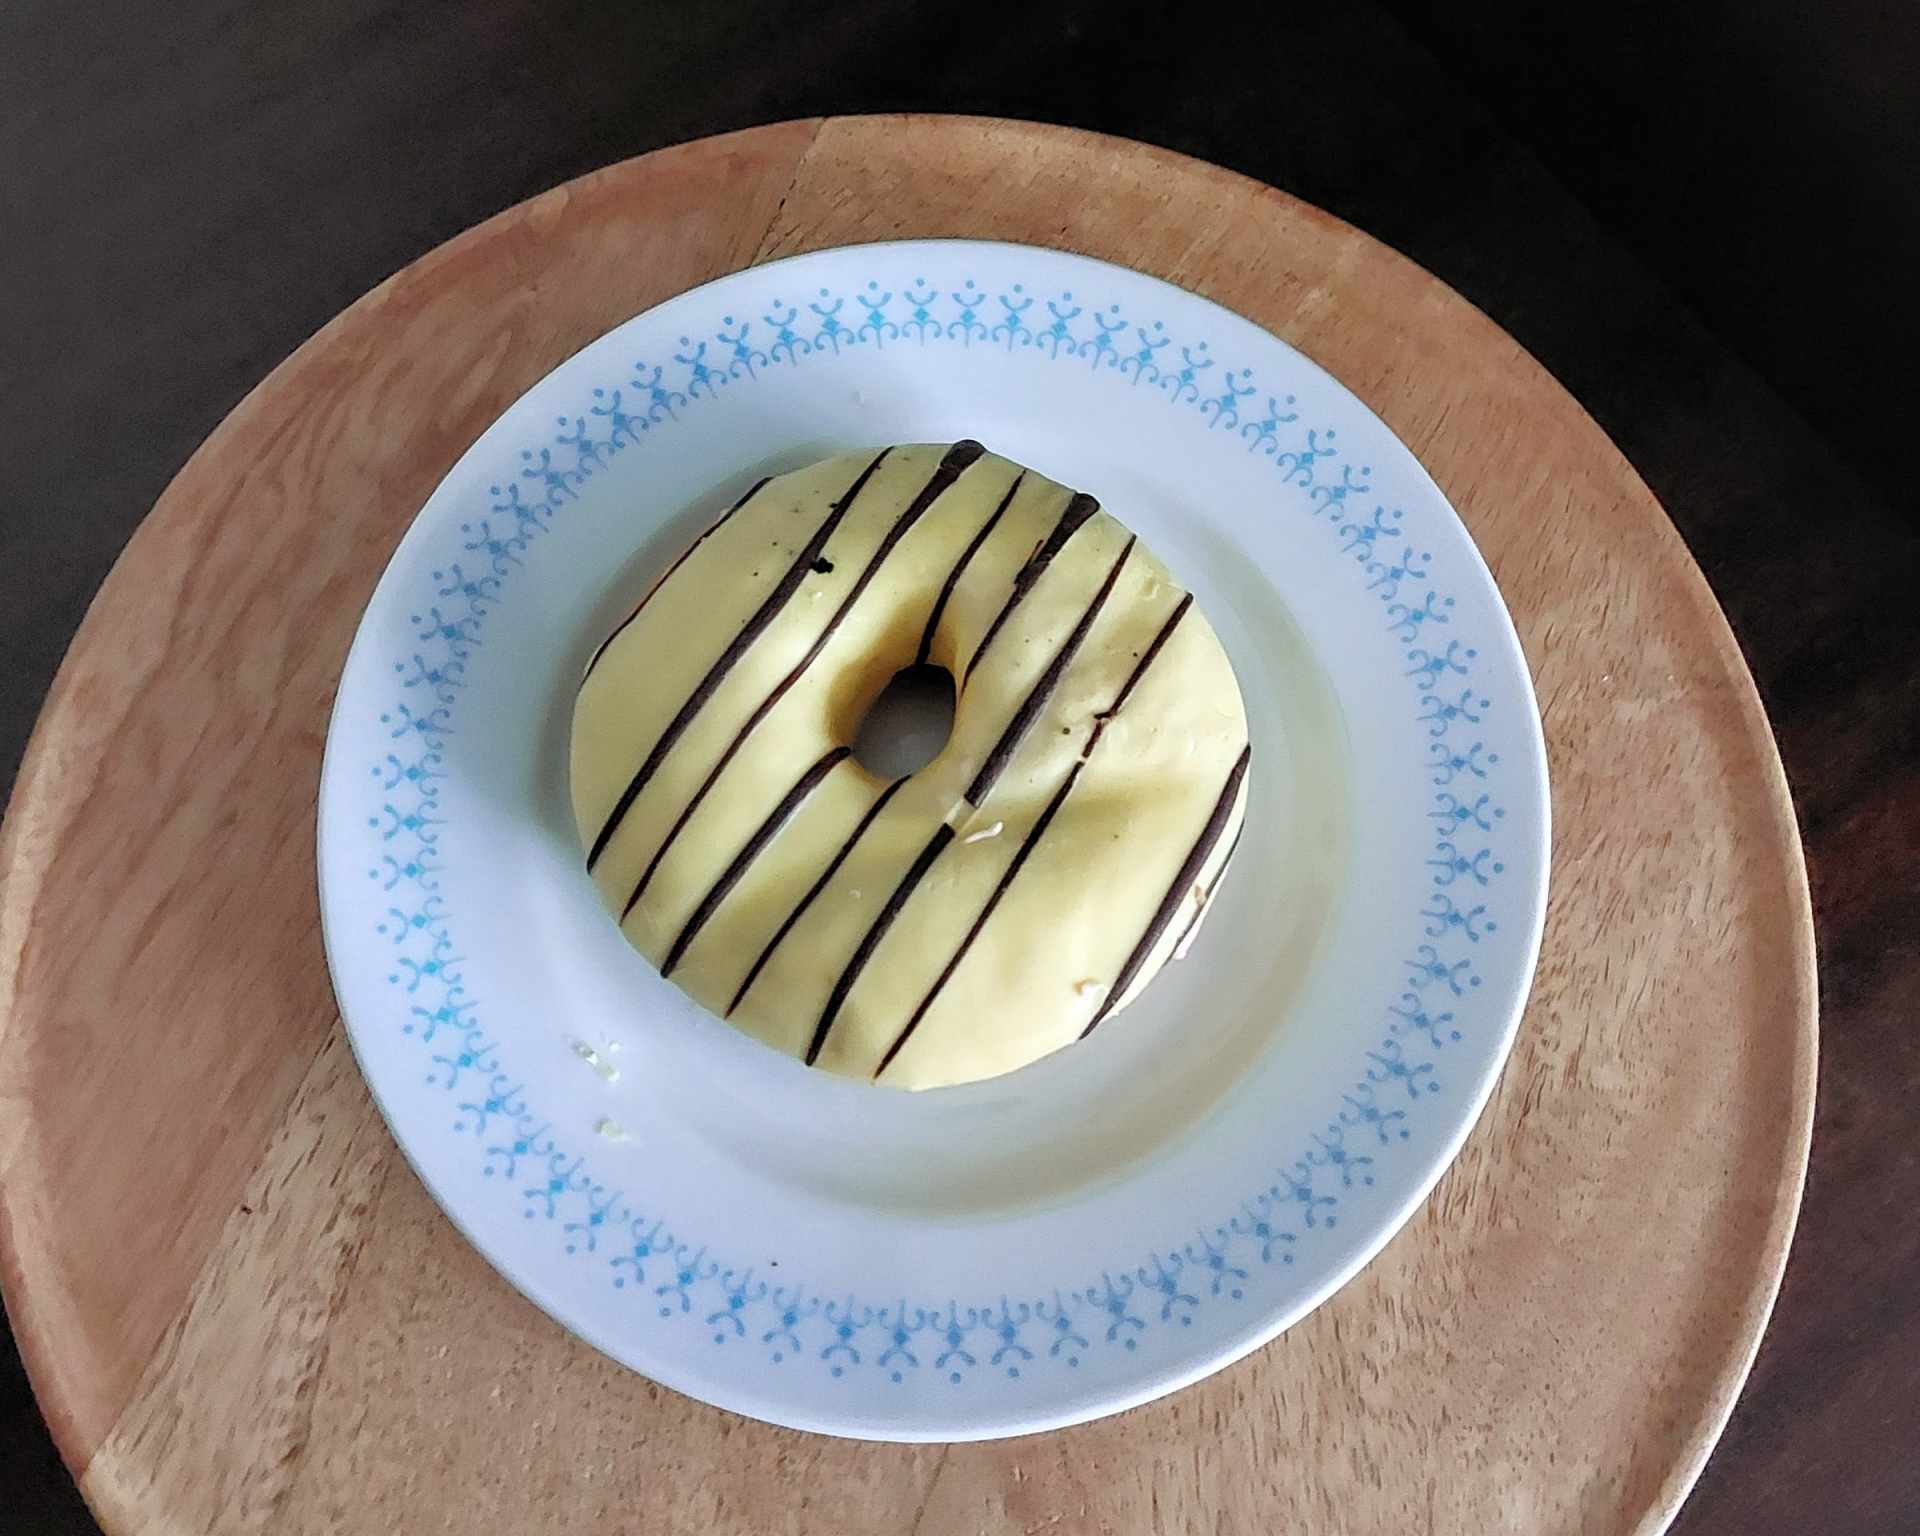 Šiška bez lepku s bielou polevou a čokoládou na bielom tanieri s modrým vzorovaným okrajom